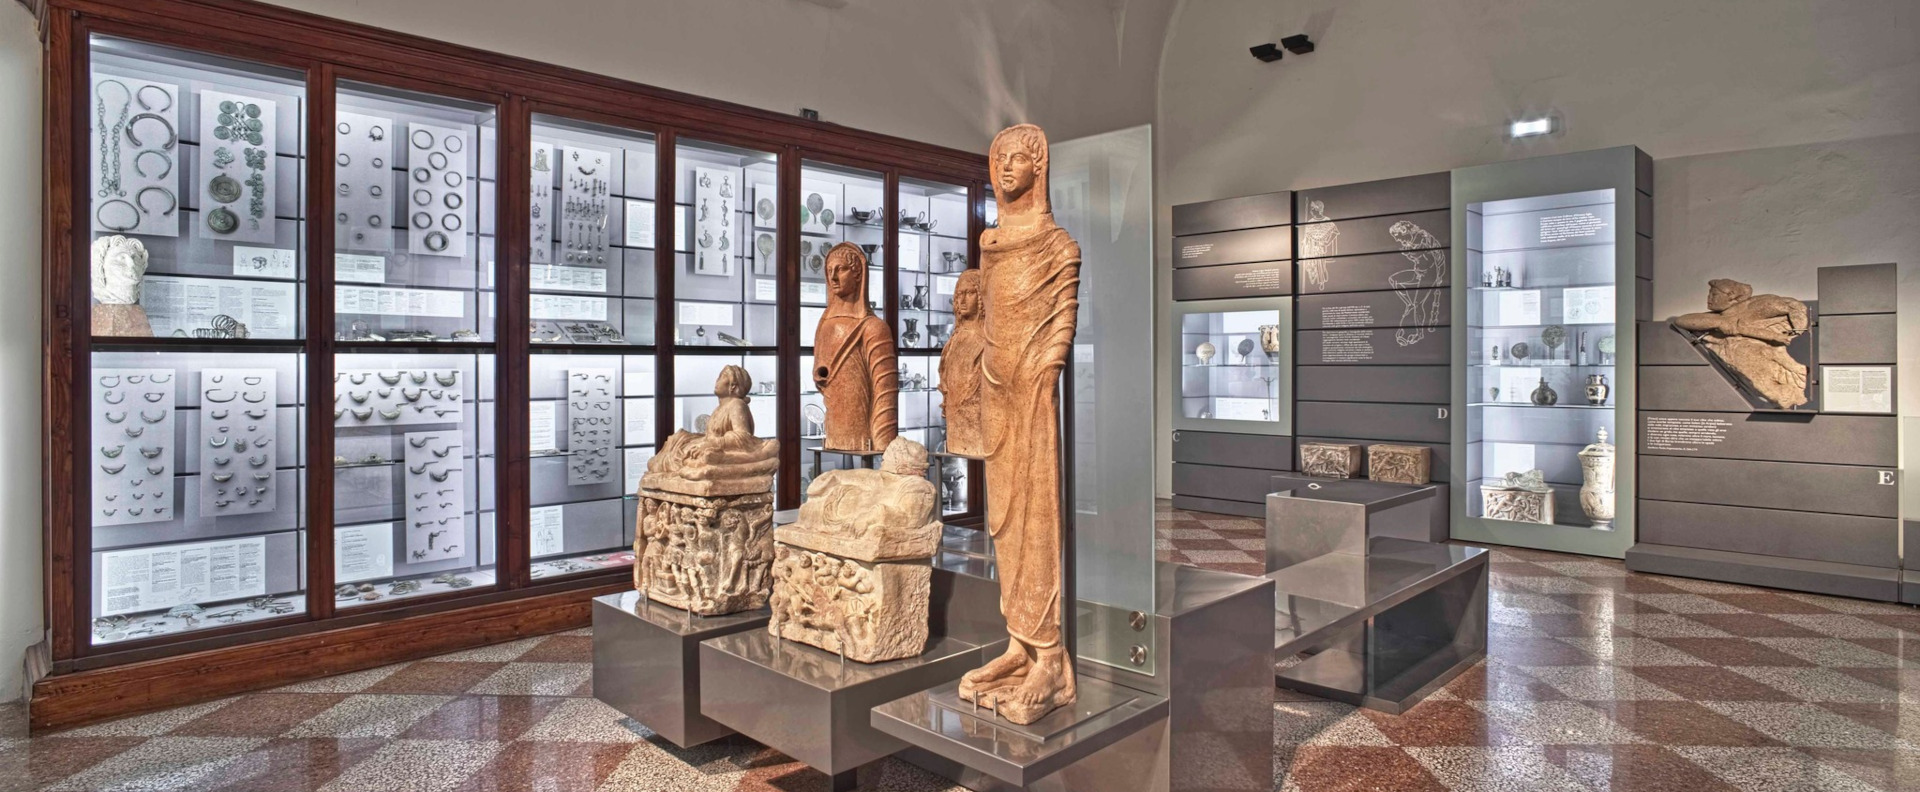 Museo Civico Archeologico di Bologna